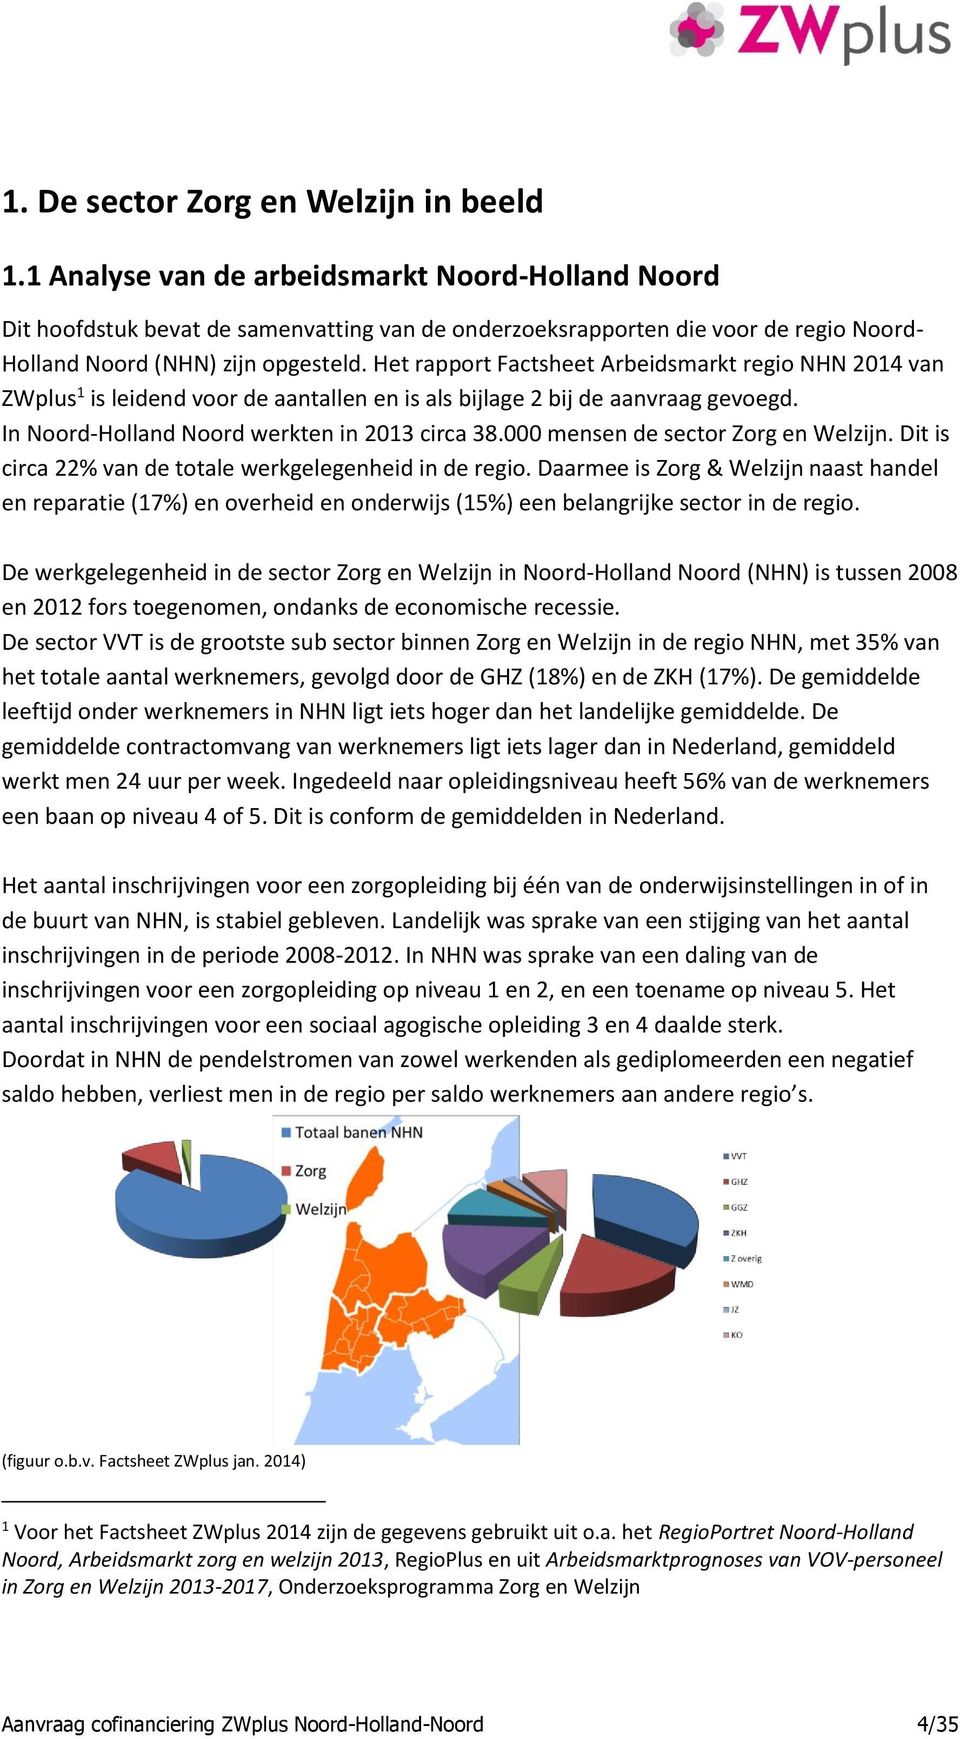 Het rapport Factsheet Arbeidsmarkt regio NHN 2014 van ZWplus 1 is leidend voor de aantallen en is als bijlage 2 bij de aanvraag gevoegd. In Noord-Holland Noord werkten in 2013 circa 38.